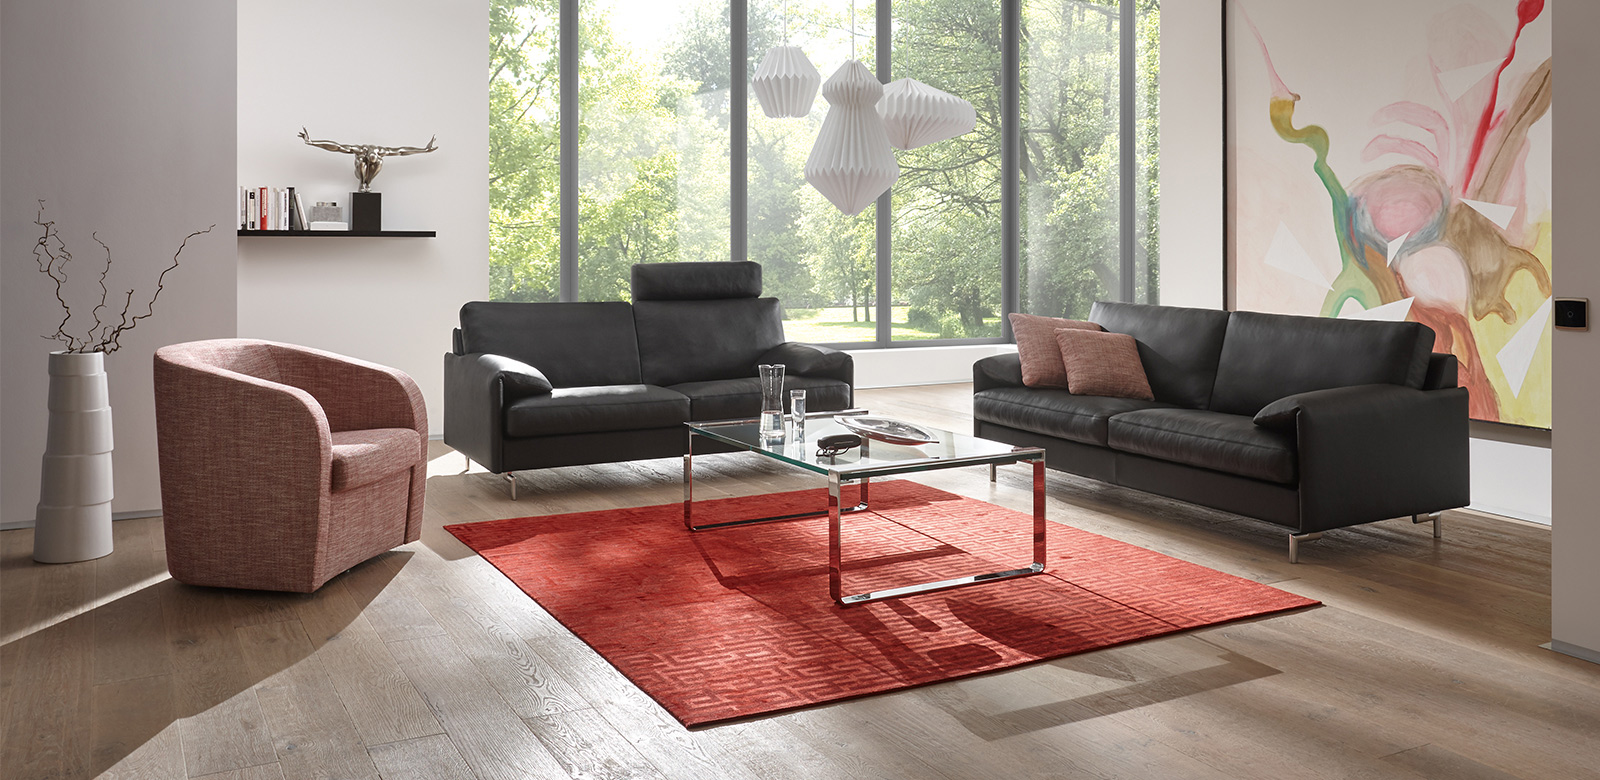 Twee CL880 banken met zwart leer, fauteuil in lichtrode stof en vierkante glazen salontafel op rood tapijt in moderne woonkamer met terras